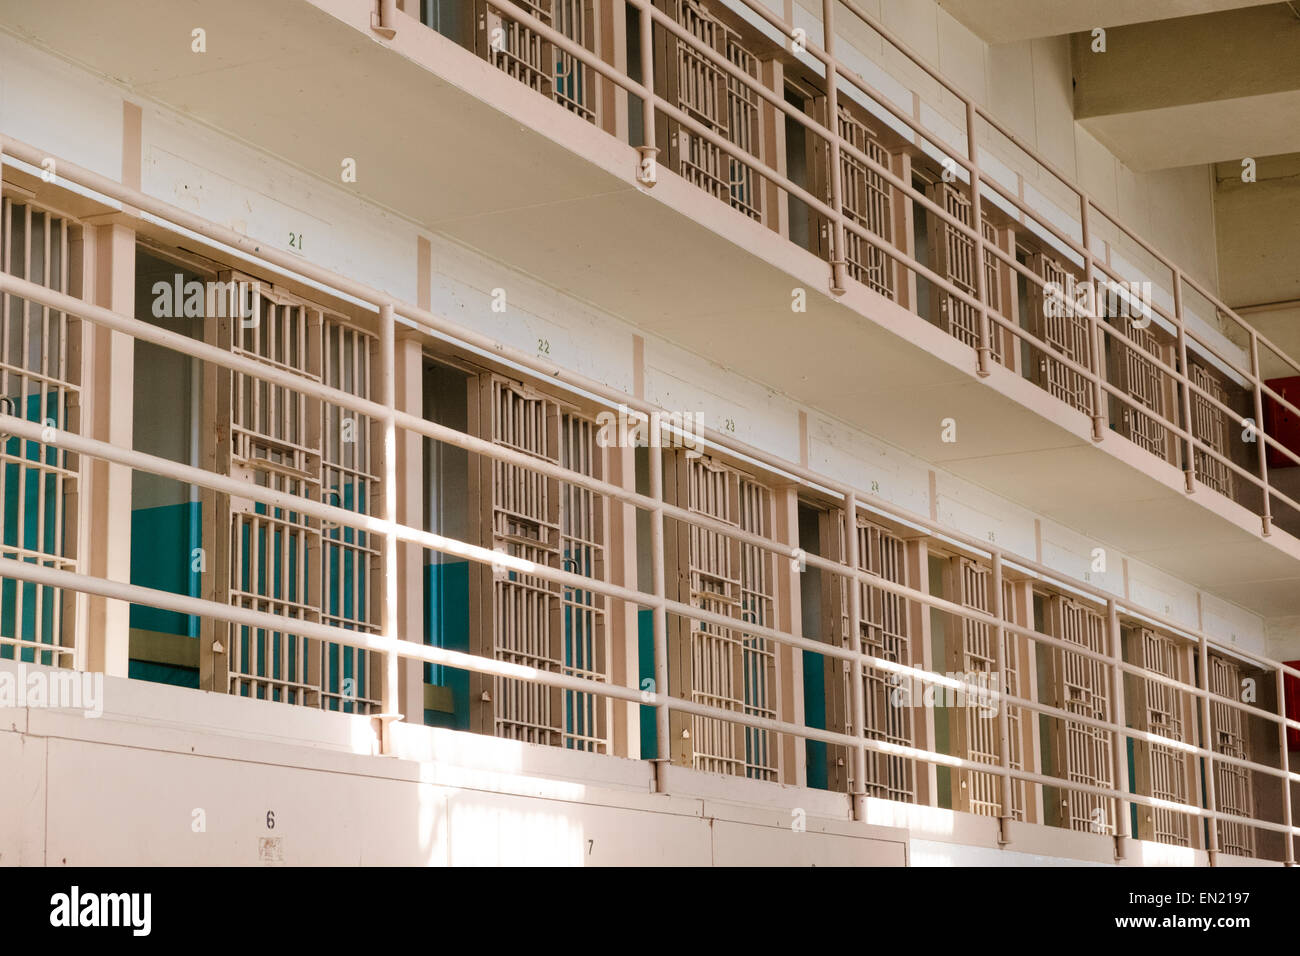 Alcatraz penitentiary prison cells Stock Photo